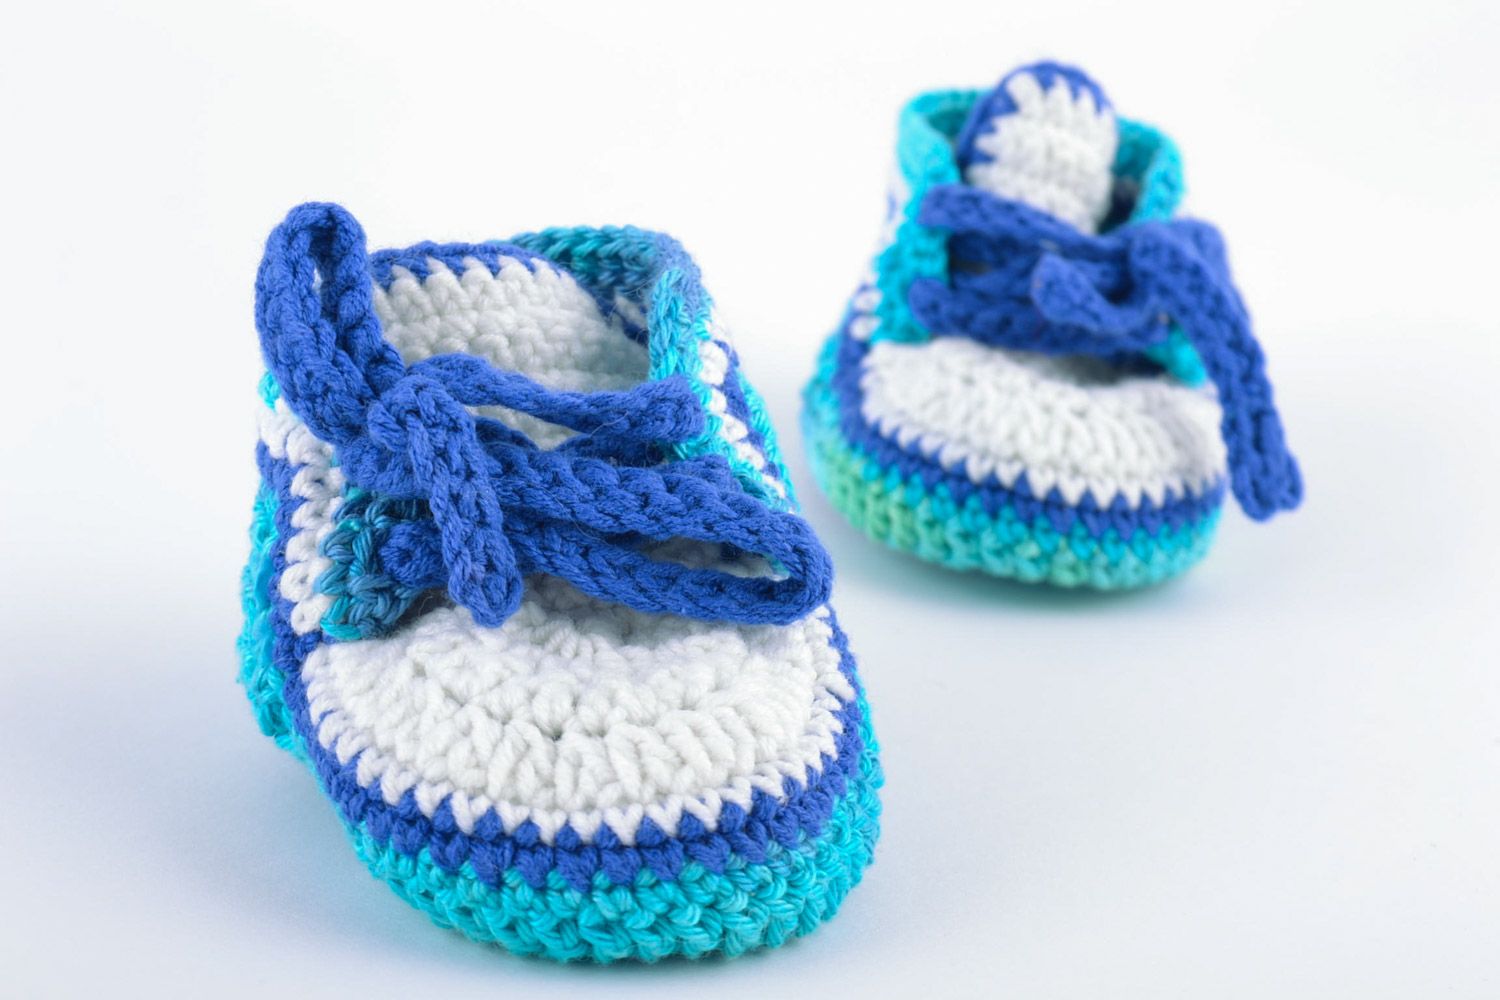 Пинетки для детей в виде ботиночек ручной работы из шерсти сине-голубые фото 5